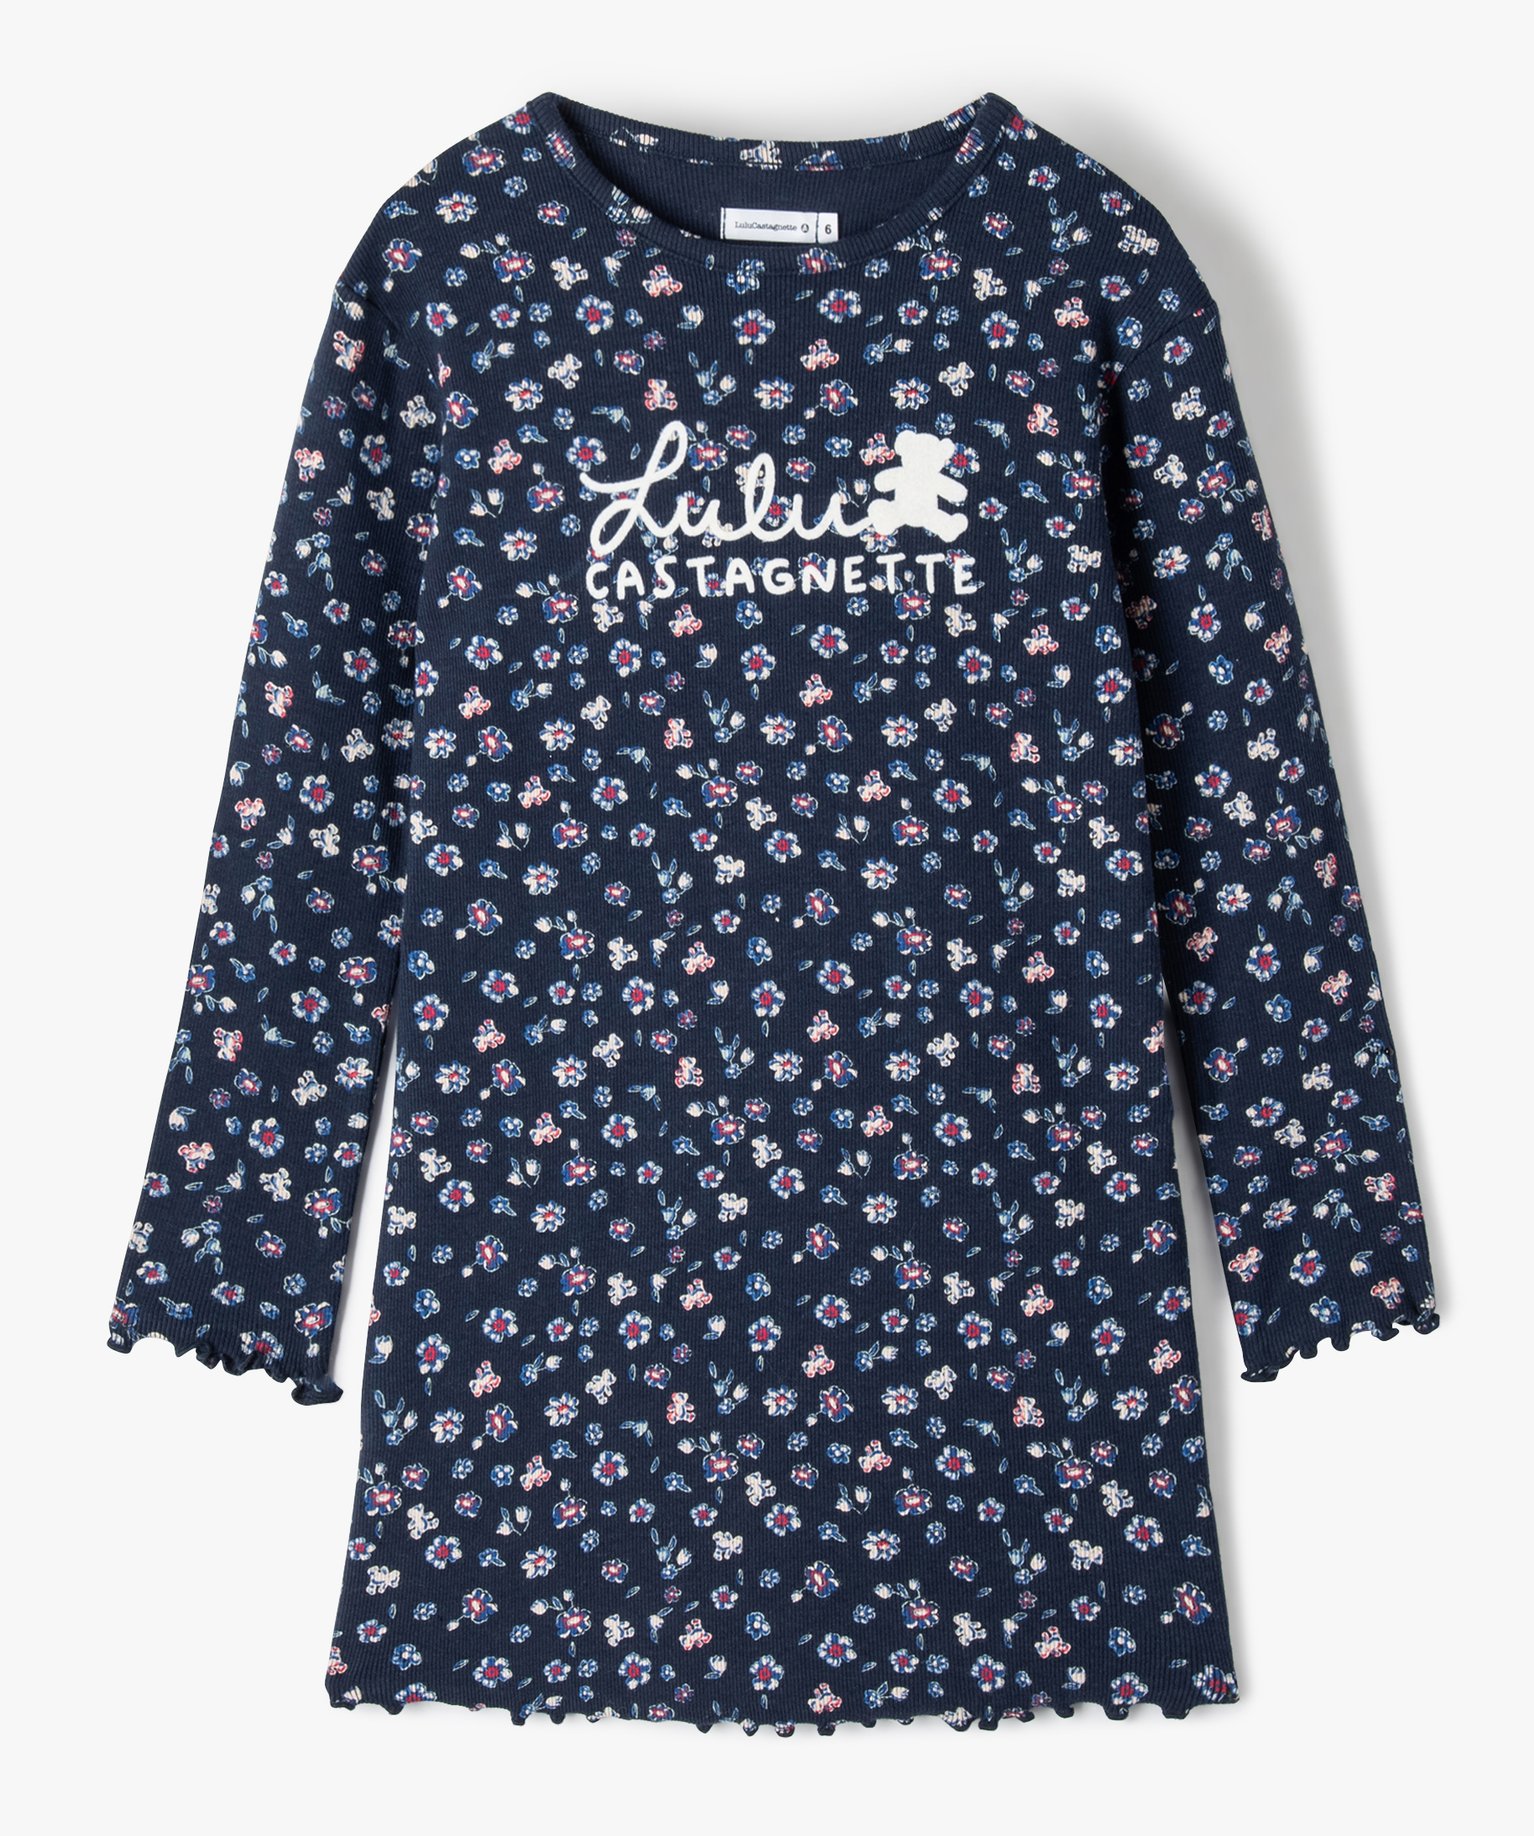 Chemise de nuit fille en maille côtelée à motifs fleuris - LuluCastagnette